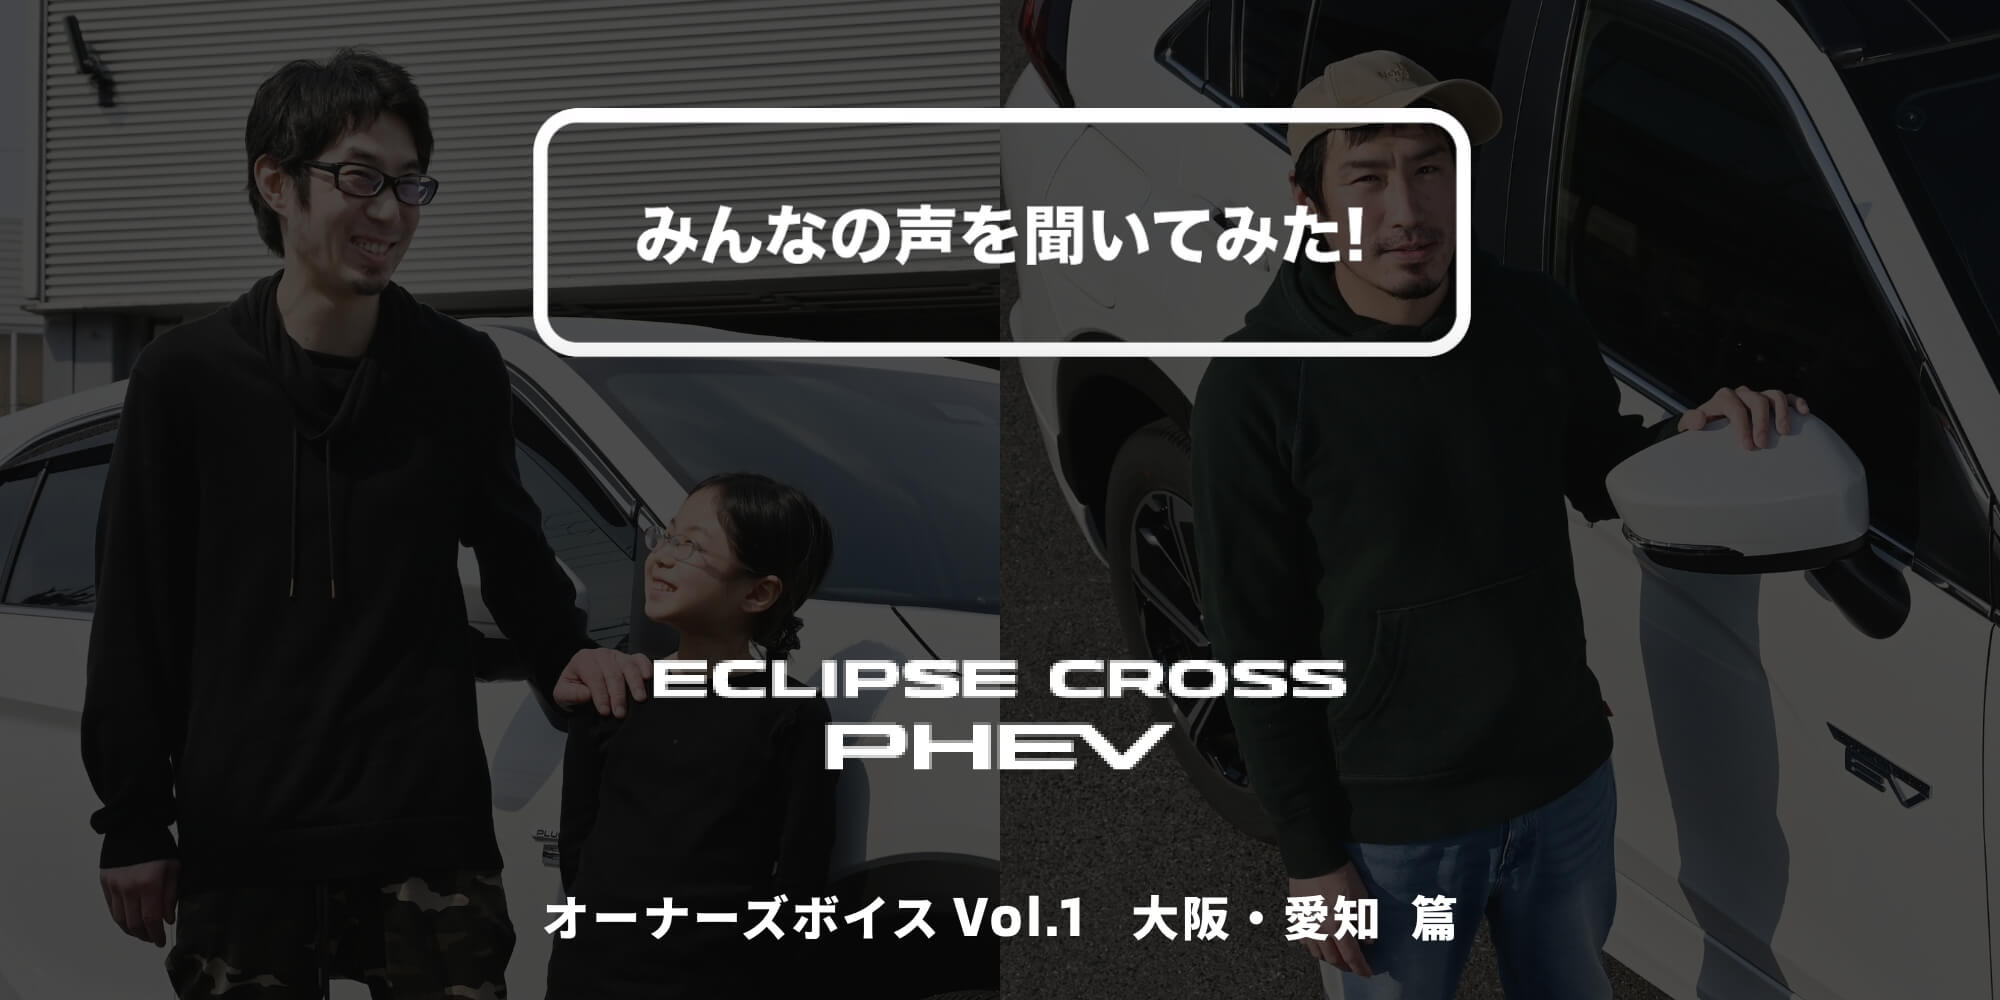 エクリプス クロスPHEV オーナーズボイス Vol.1 大阪・愛知 篇